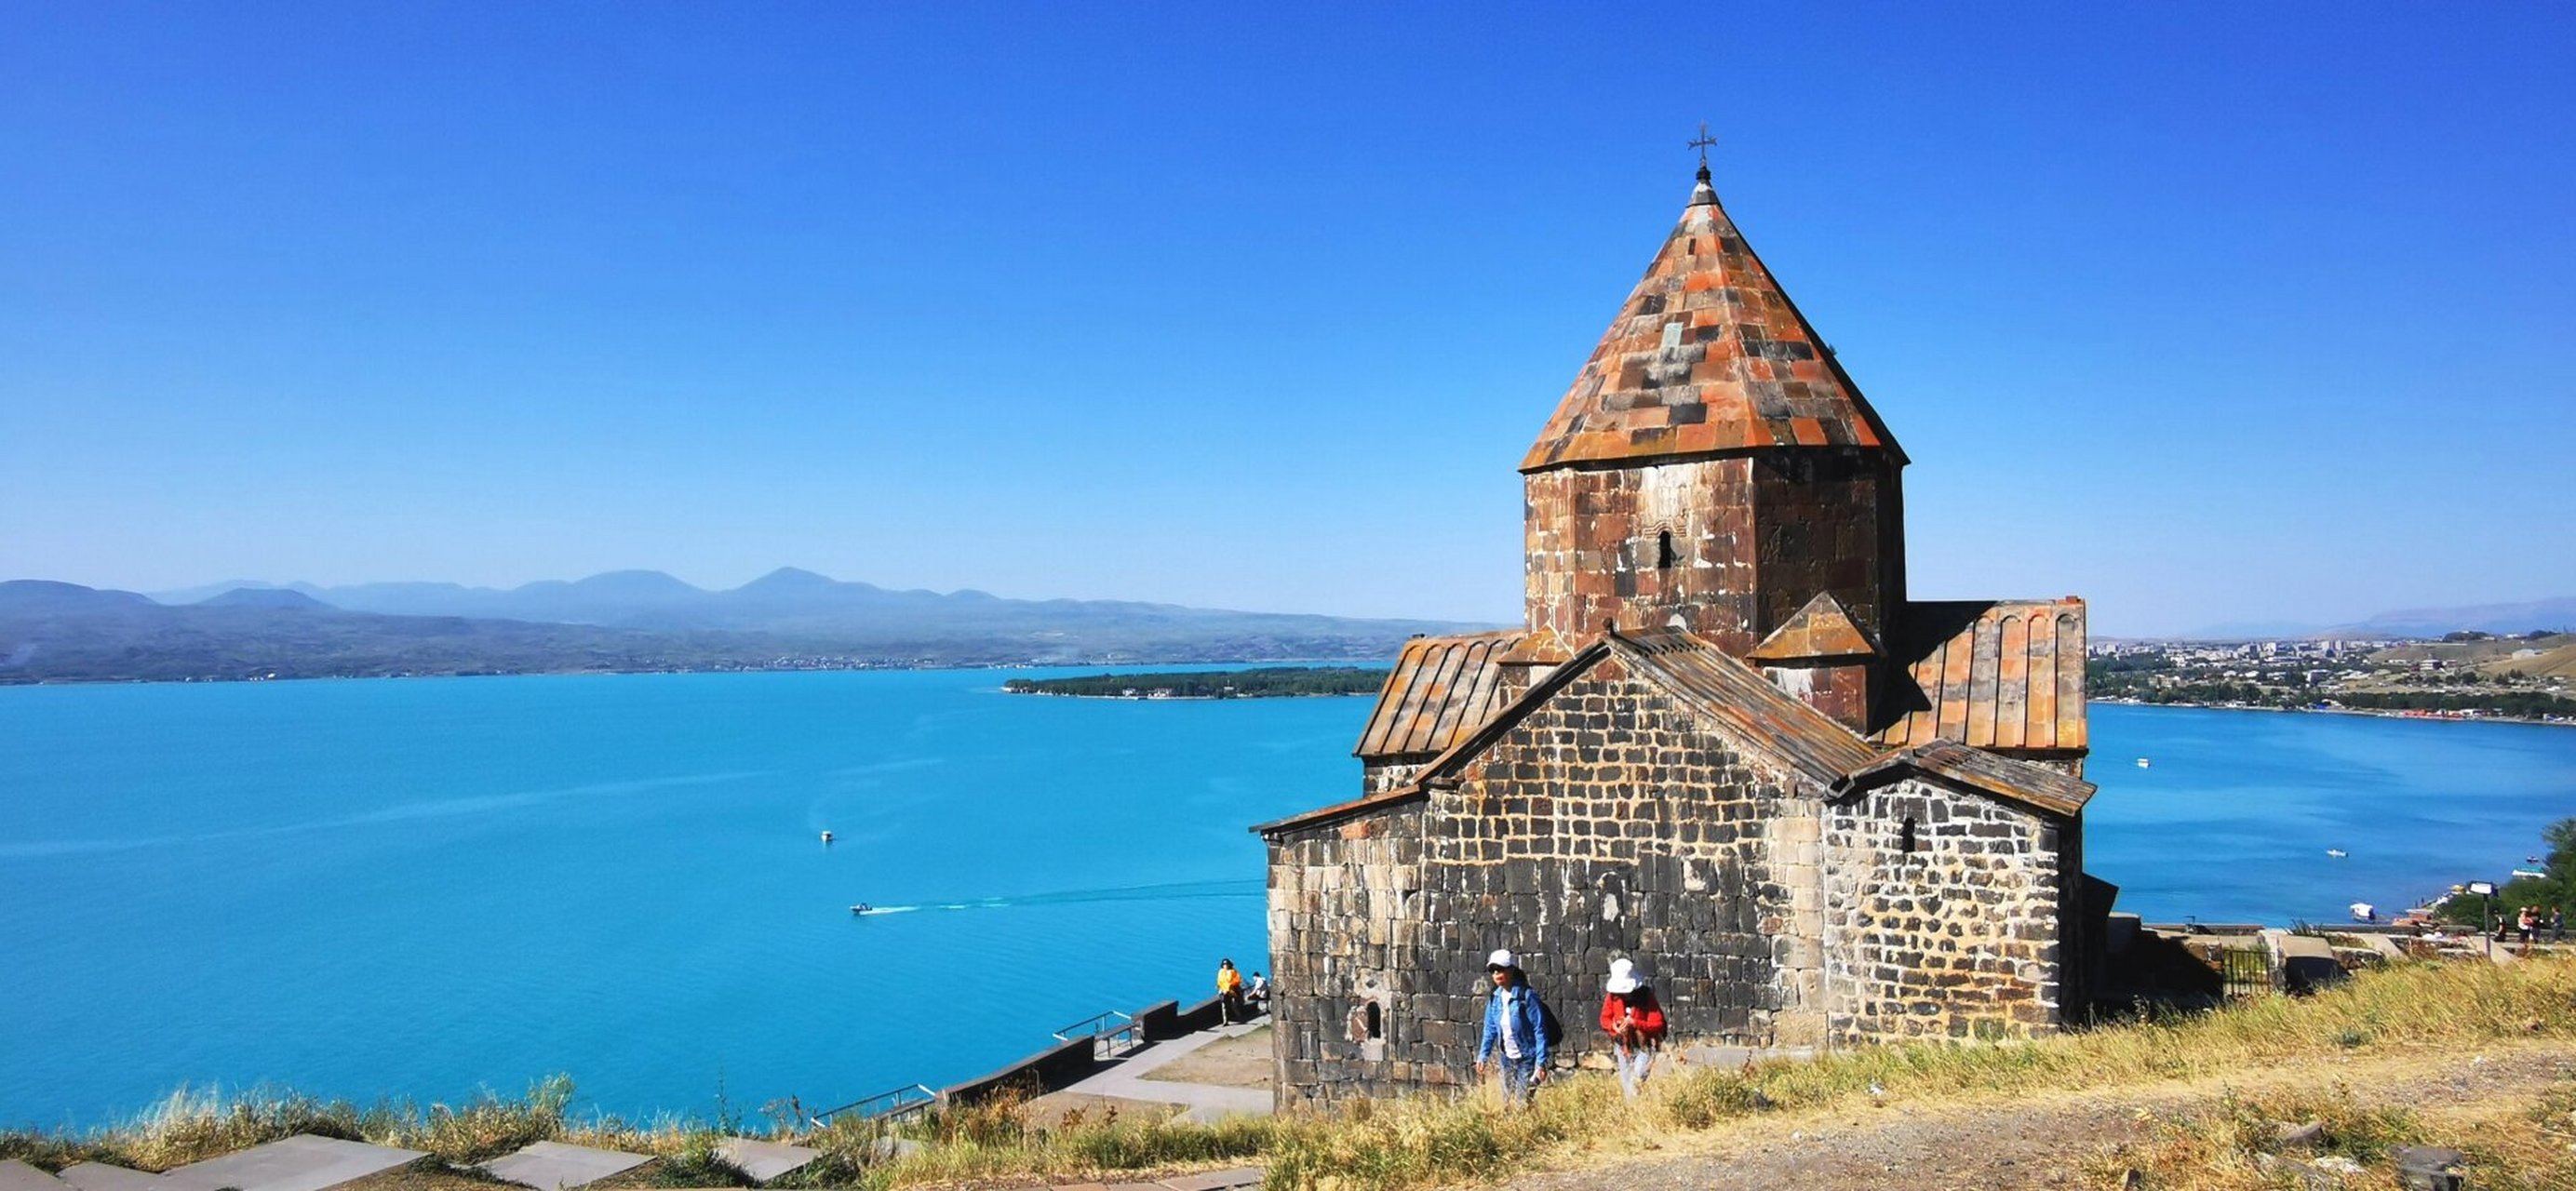 亚美尼亚自然风光 亚美尼亚的自然风光 67塞凡湖,世界最大的高山